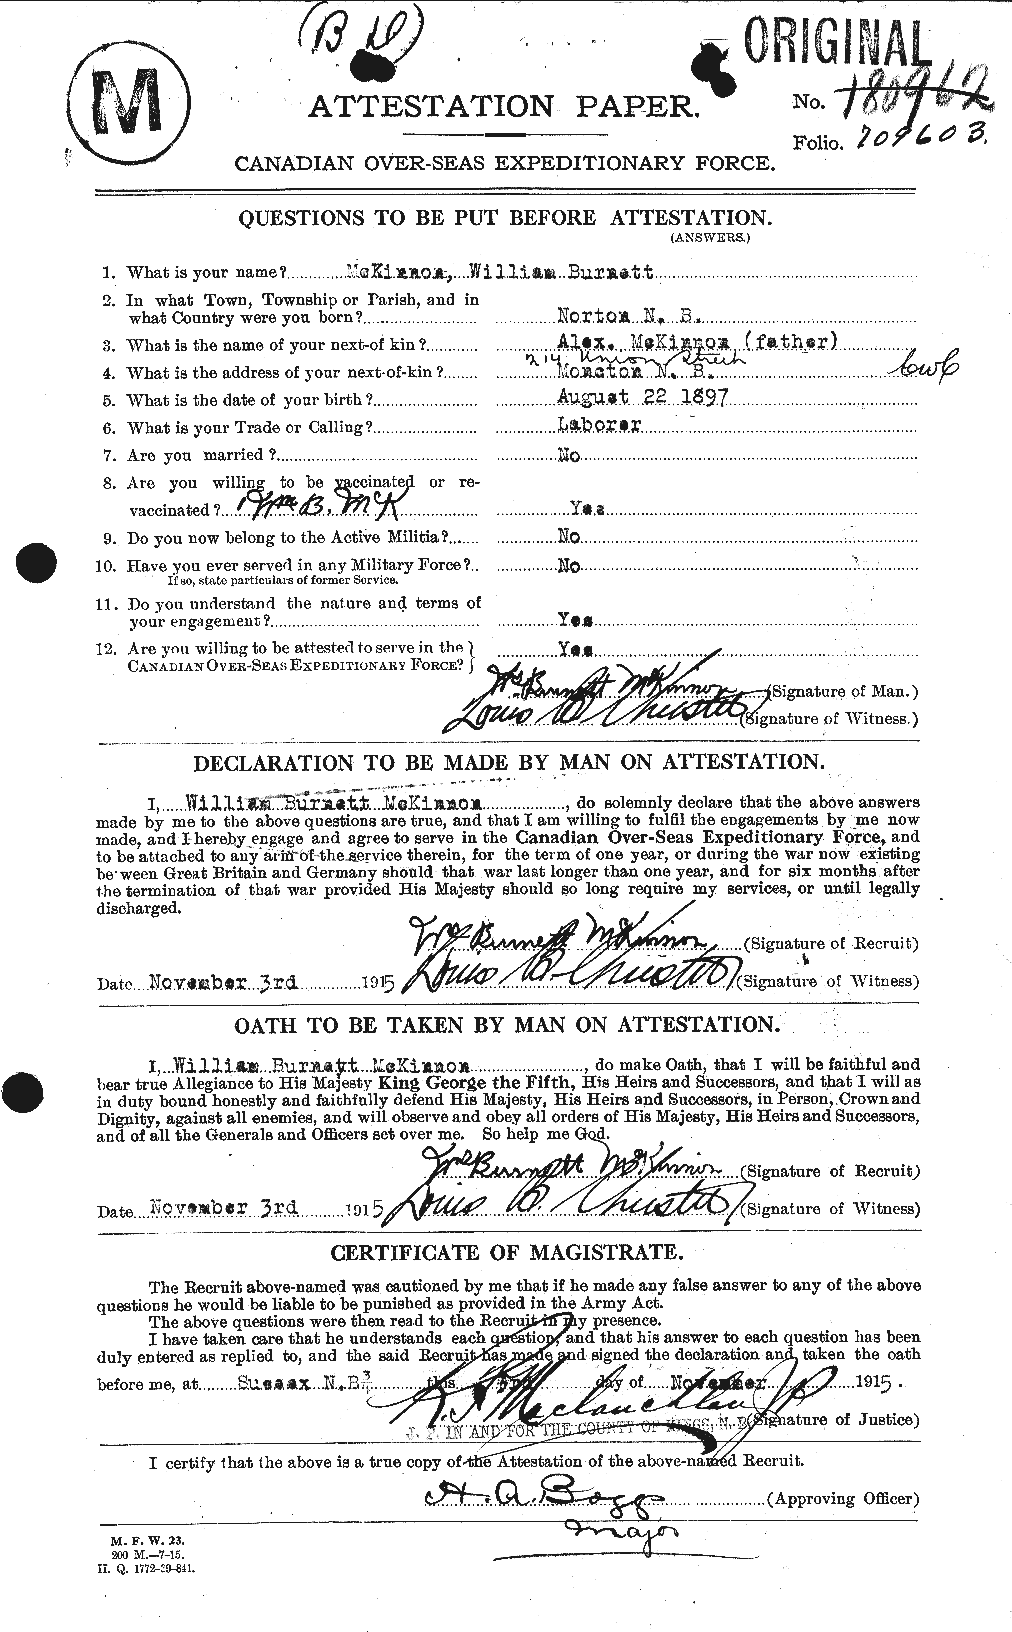 Dossiers du Personnel de la Première Guerre mondiale - CEC 534315a